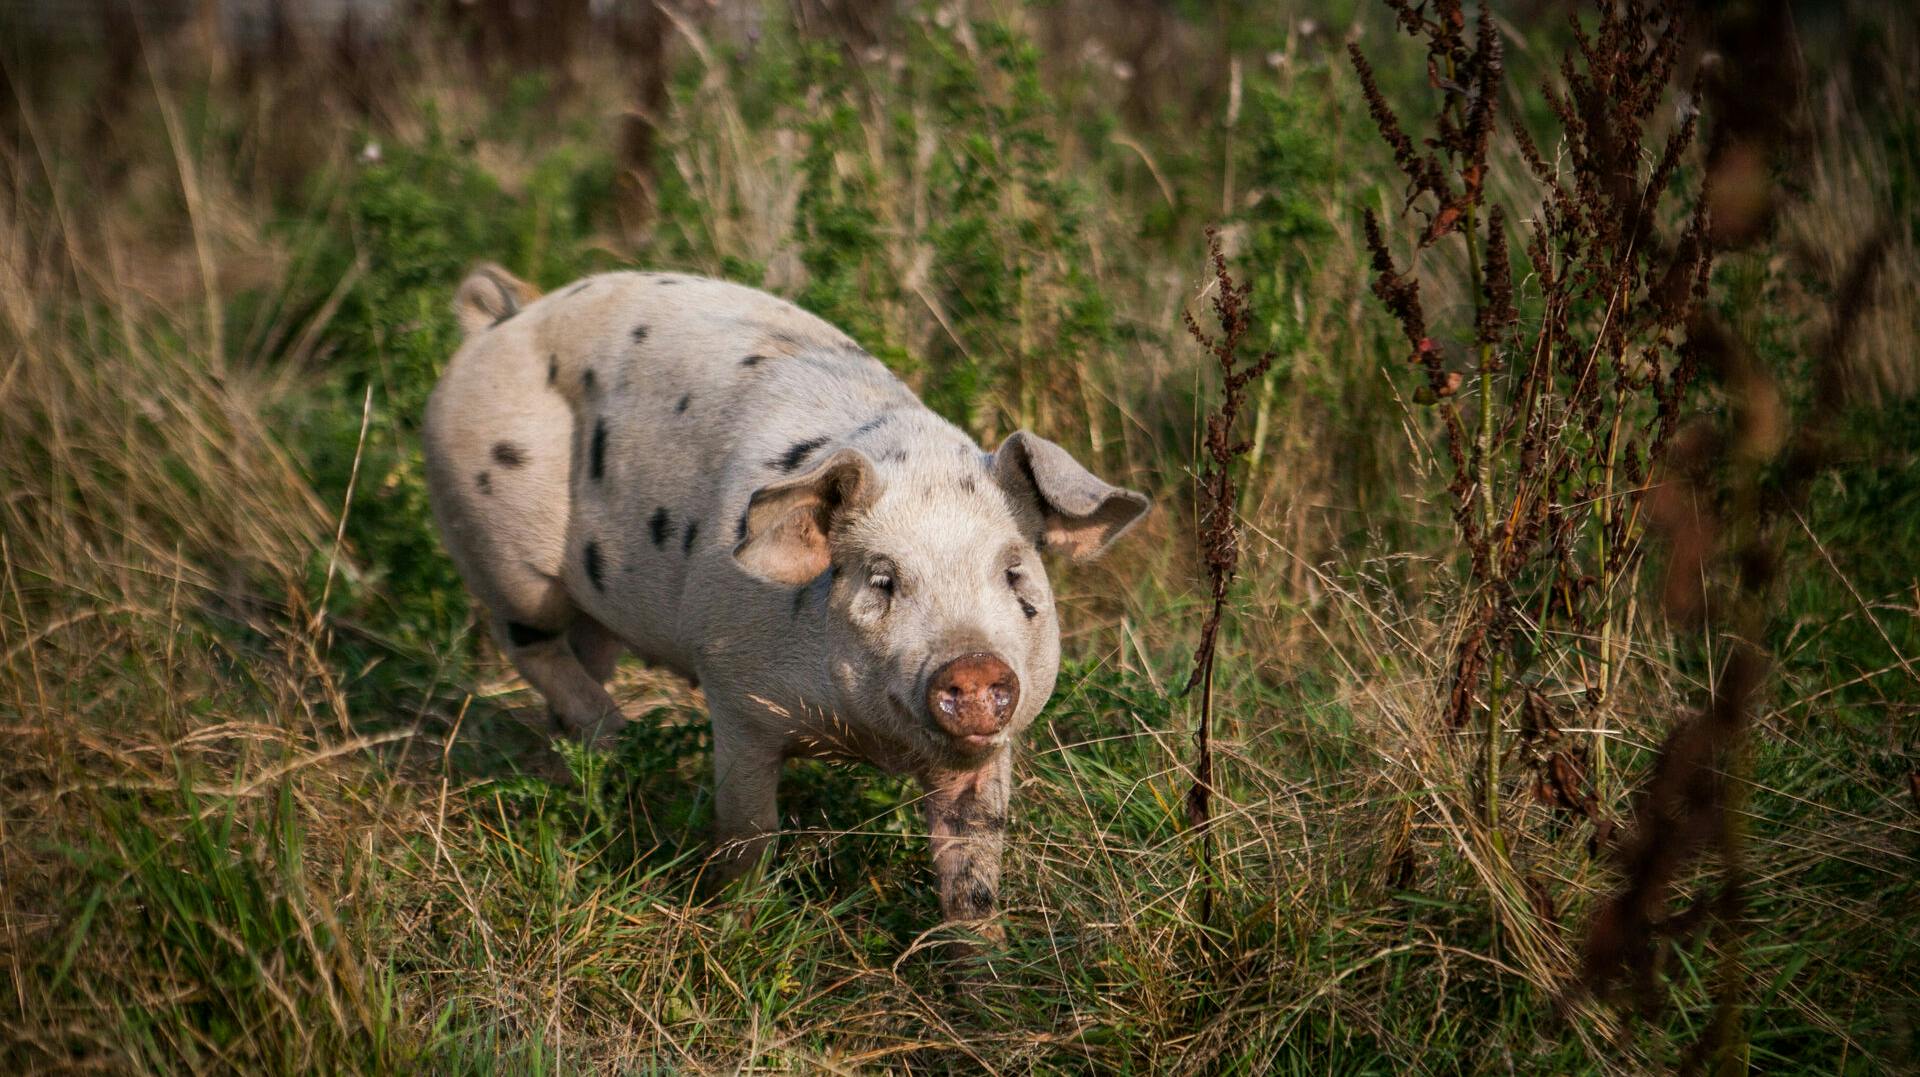 En bornholmsk vindbonde er blevet idømt en bøde på 5000 kroner for dyremishandling – mishandlingen bestod i at fodre grisen med cola.